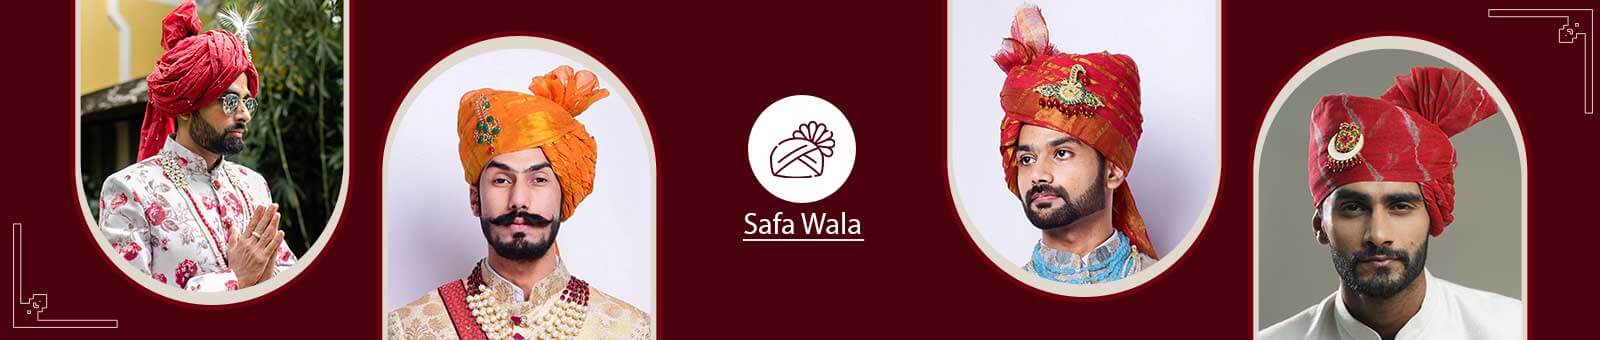 Safa Wala